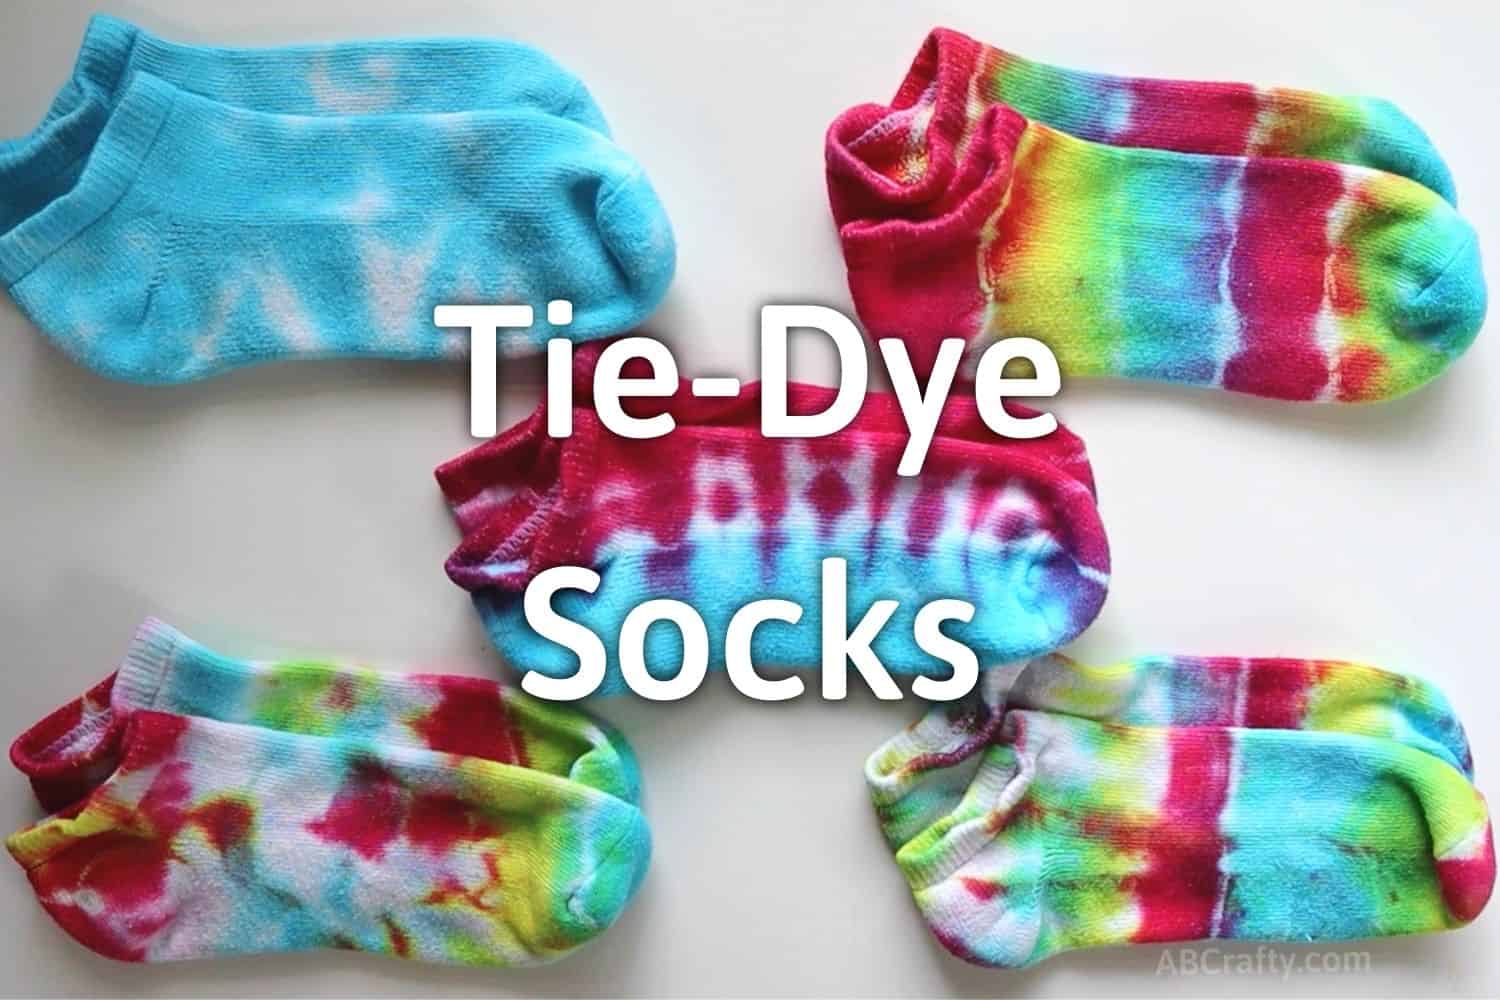 DIY No-Slip Socks - 30 Minute Crafts